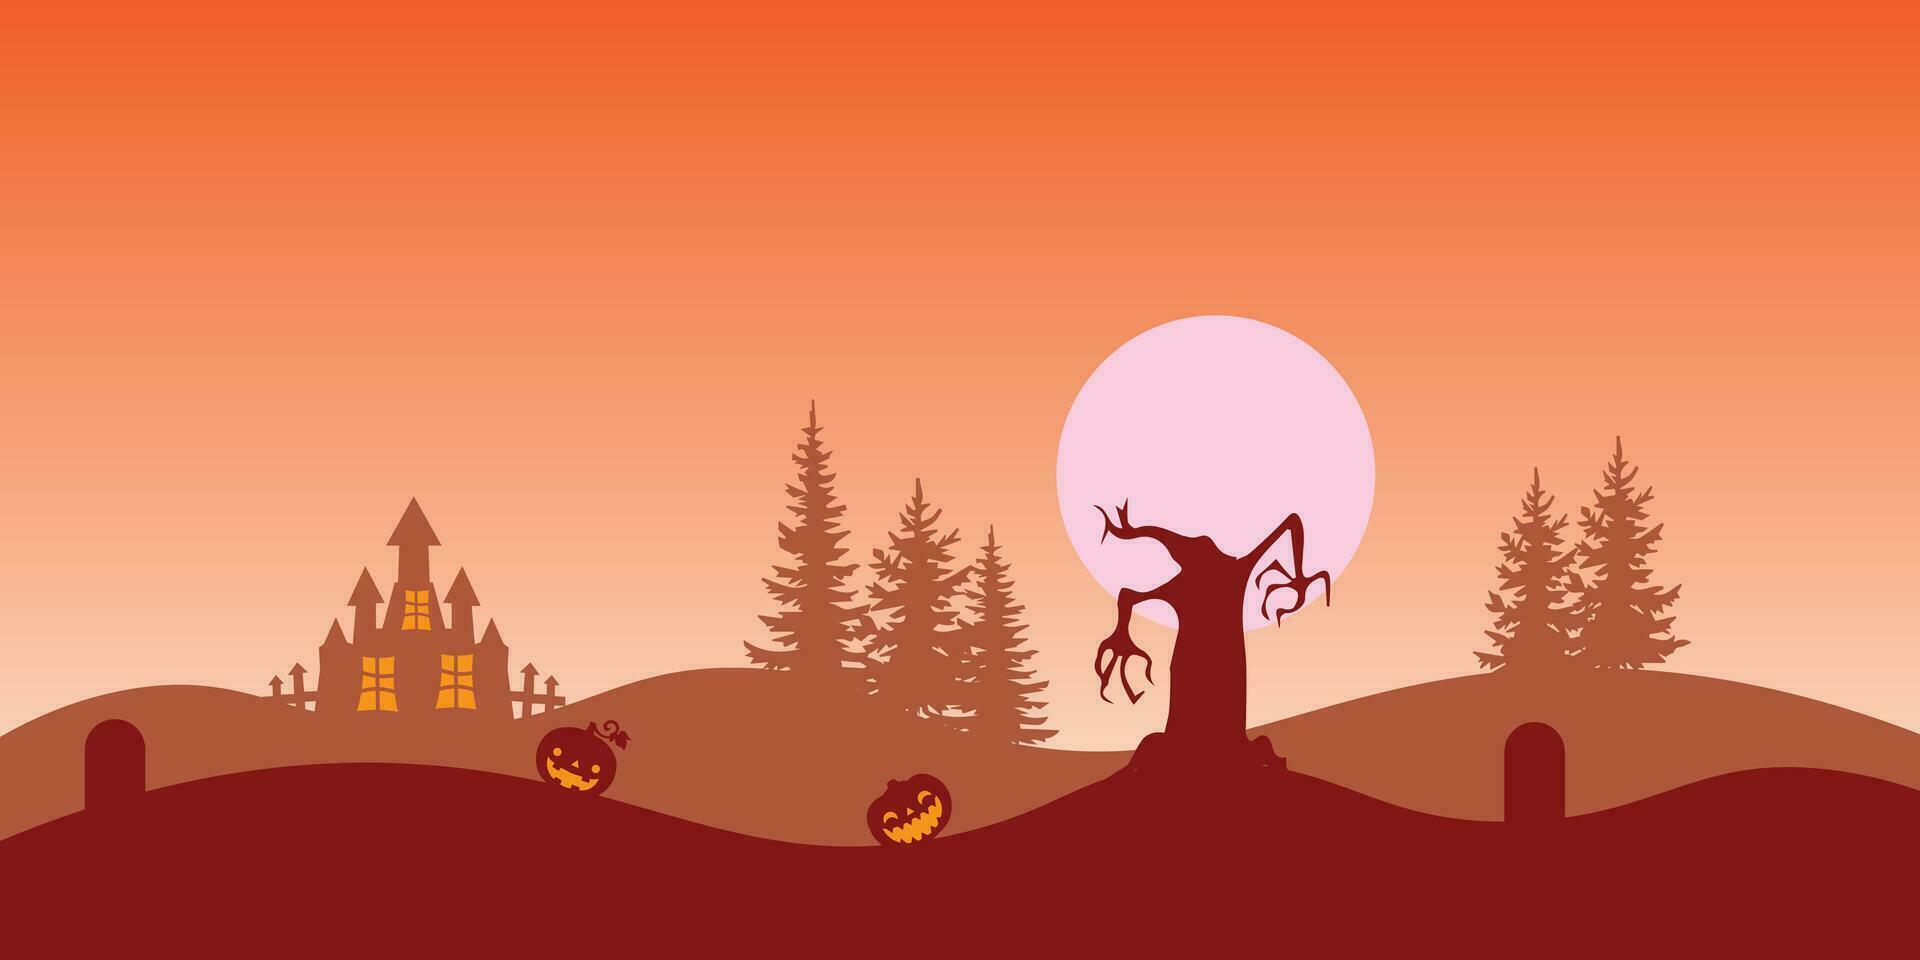 Vektor Hintergrund Design mit Halloween Thema